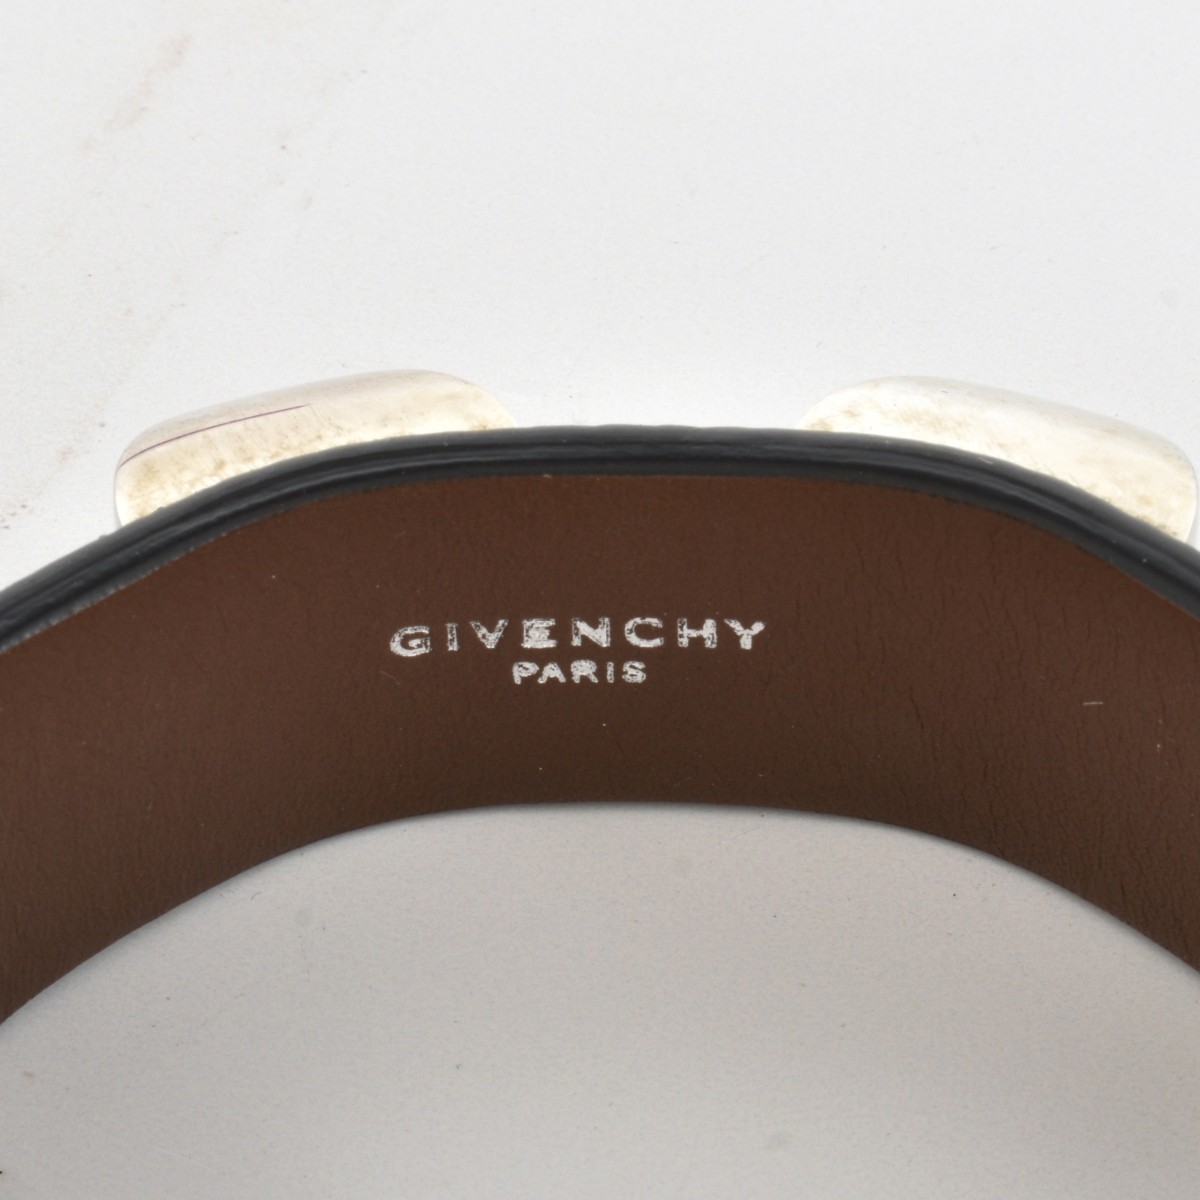 Givenchy Paris Bracelet